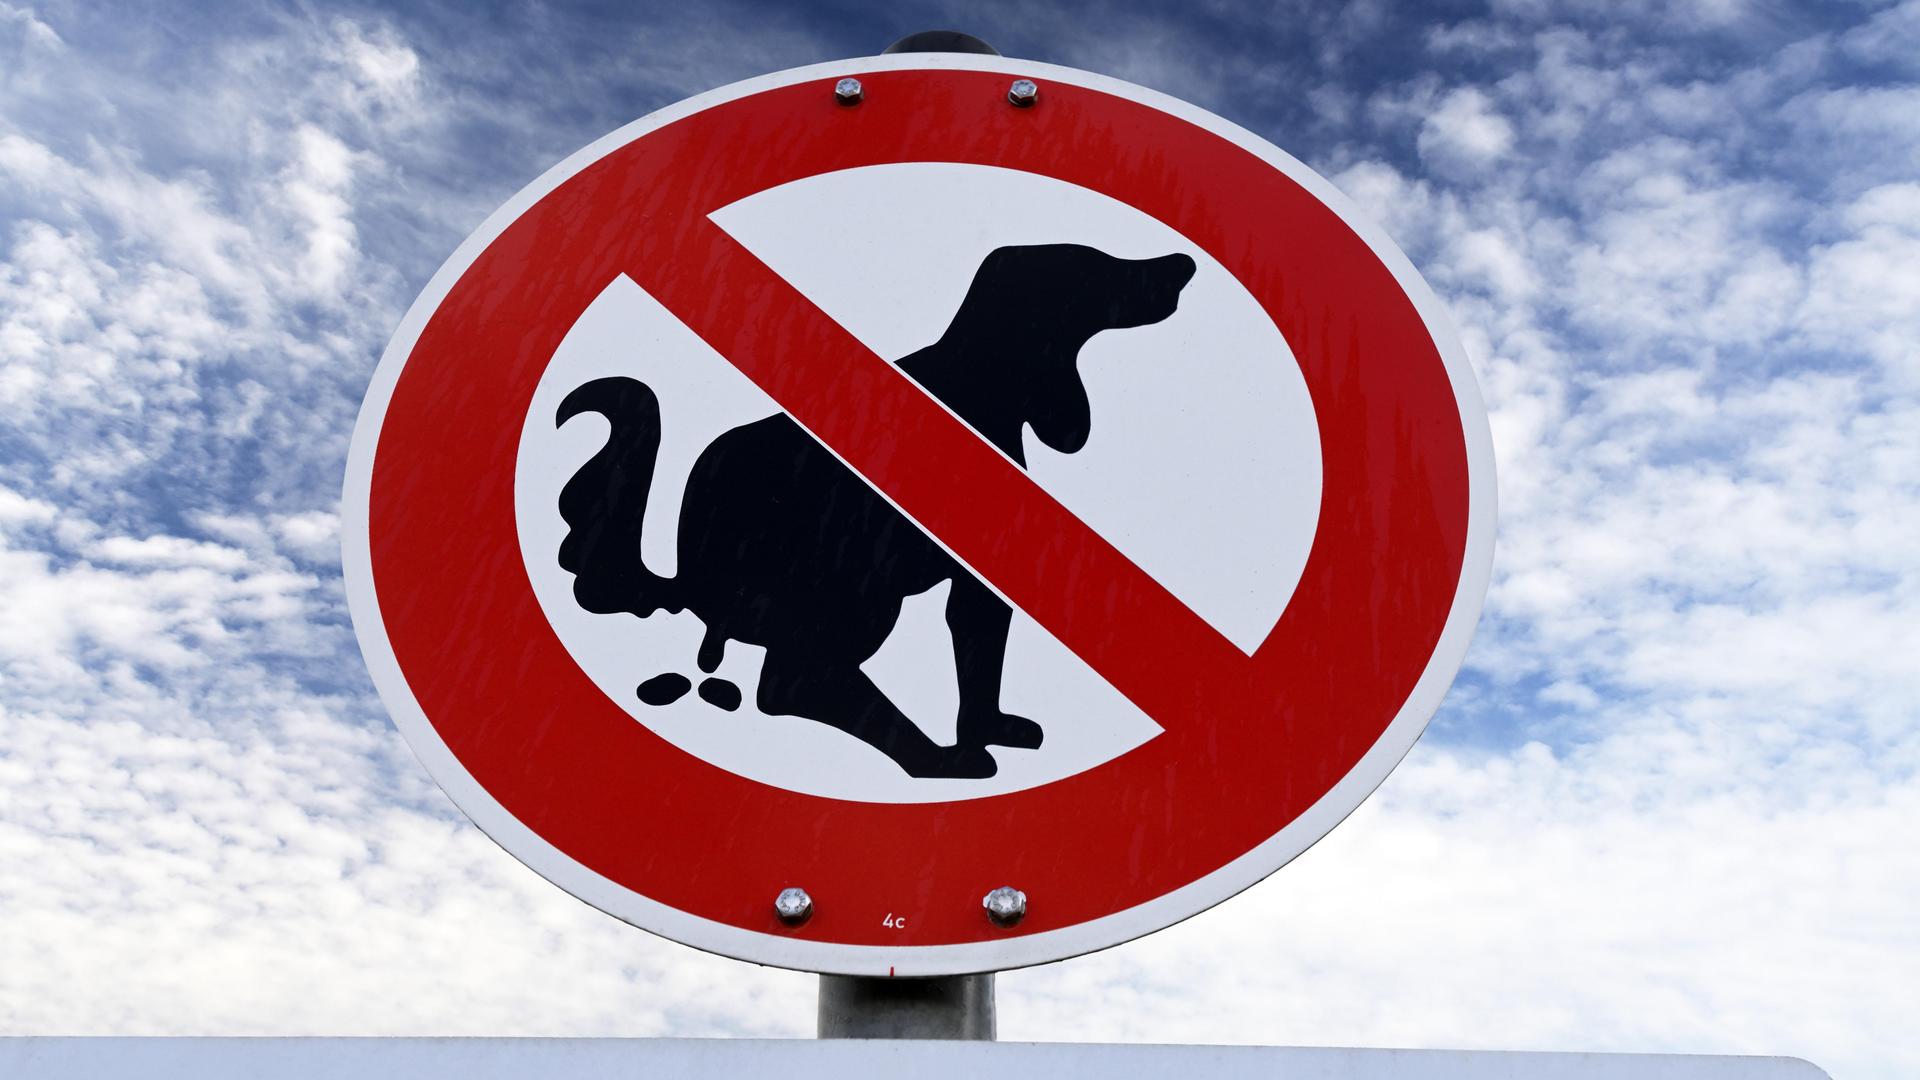 Ein Verbotsschild weist daraufhin, dass Hunde an dieser Stelle ihr Geschäft nicht verrichten dürfen.
